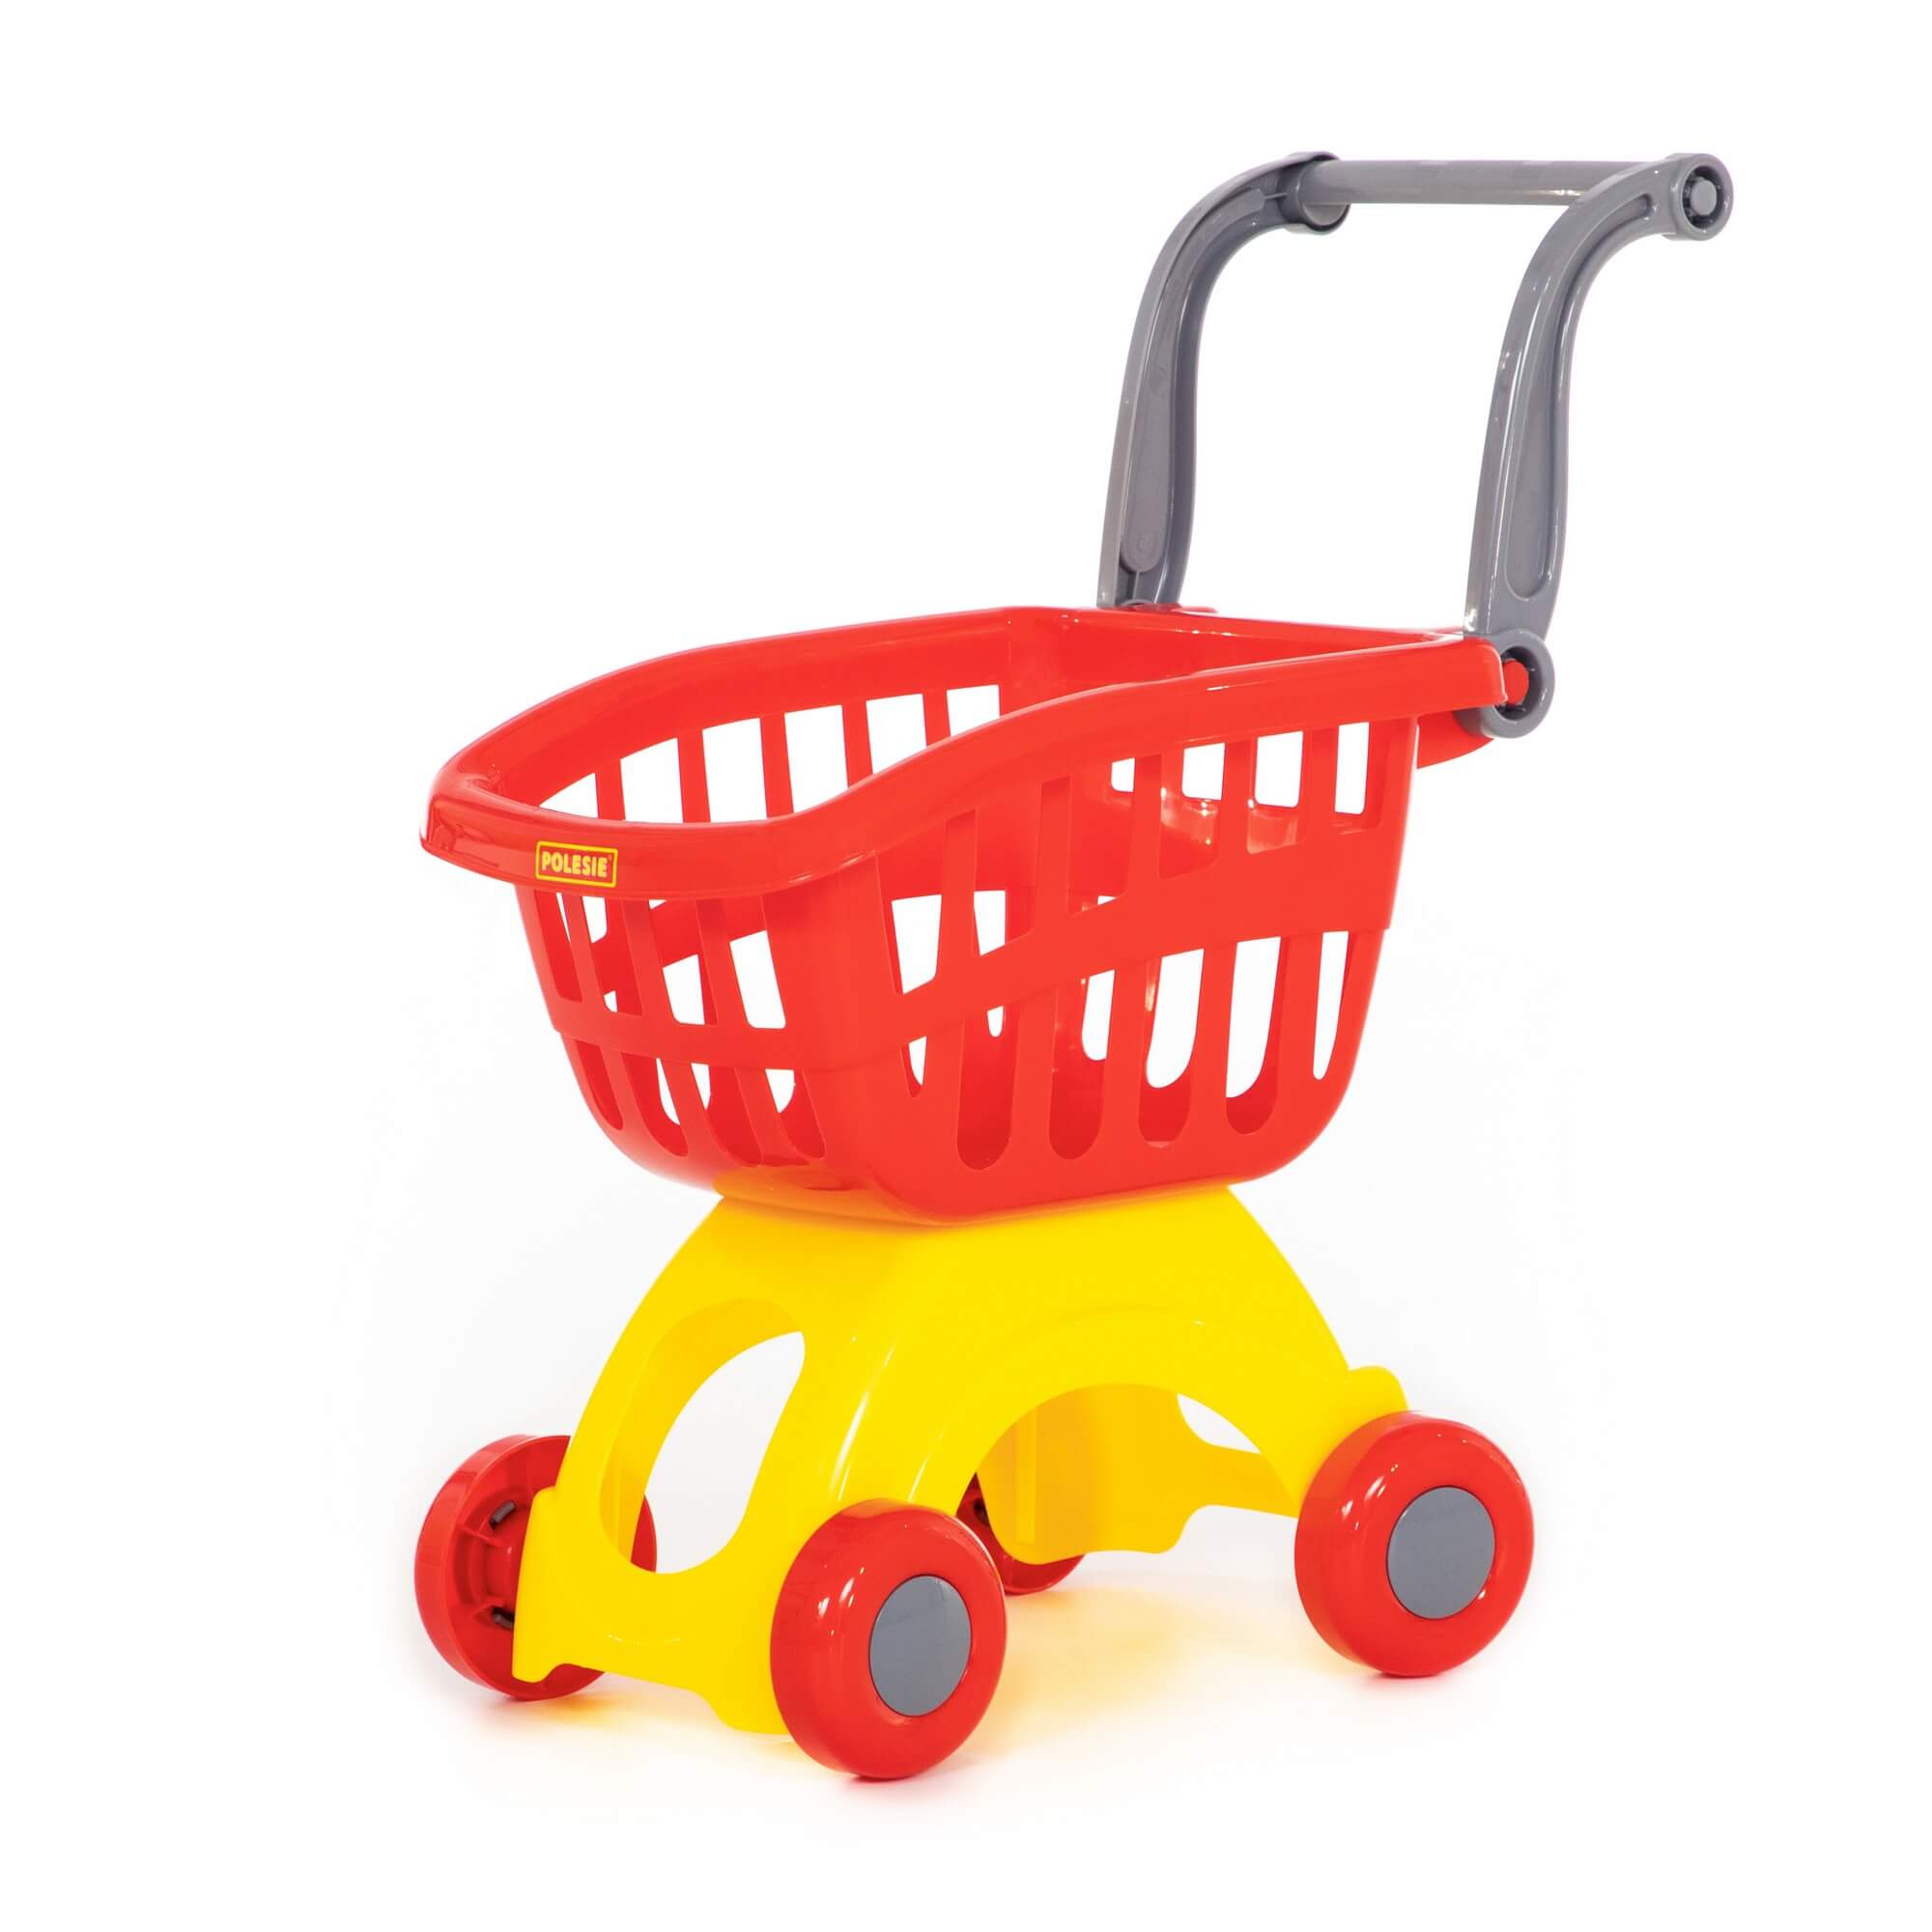 Тележка игрушечная Полесье для супермаркета красная 71279TelMiniRed дрель игрушечная полесье красная в пакете 90461